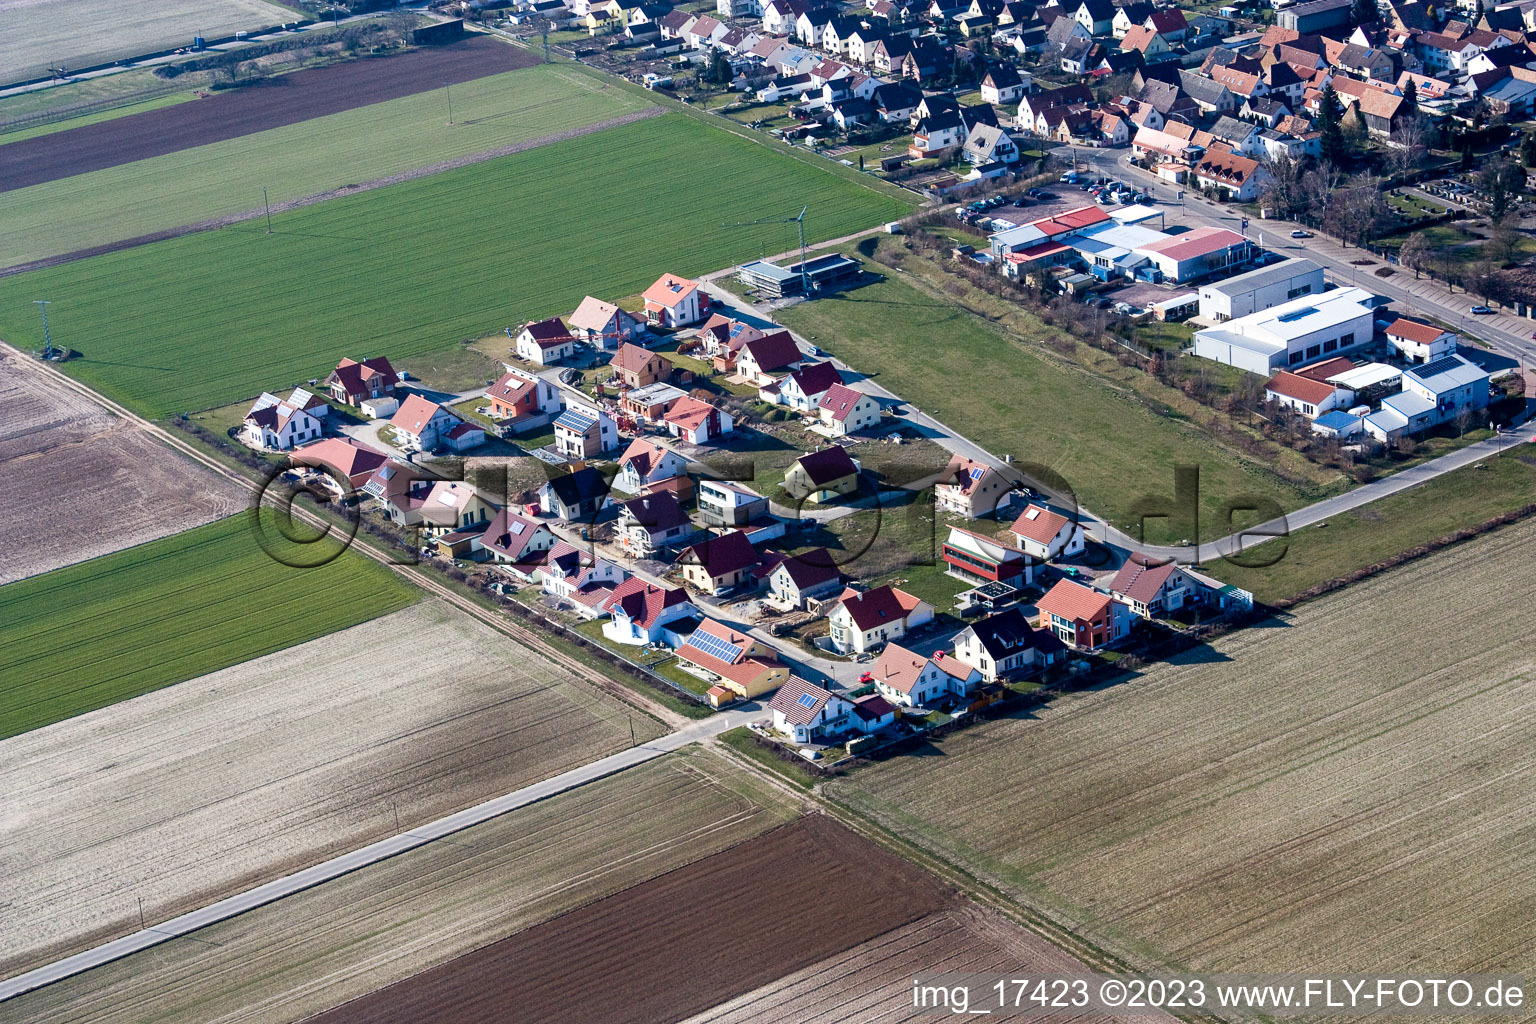 Steinweiler im Bundesland Rheinland-Pfalz, Deutschland von der Drohne aus gesehen